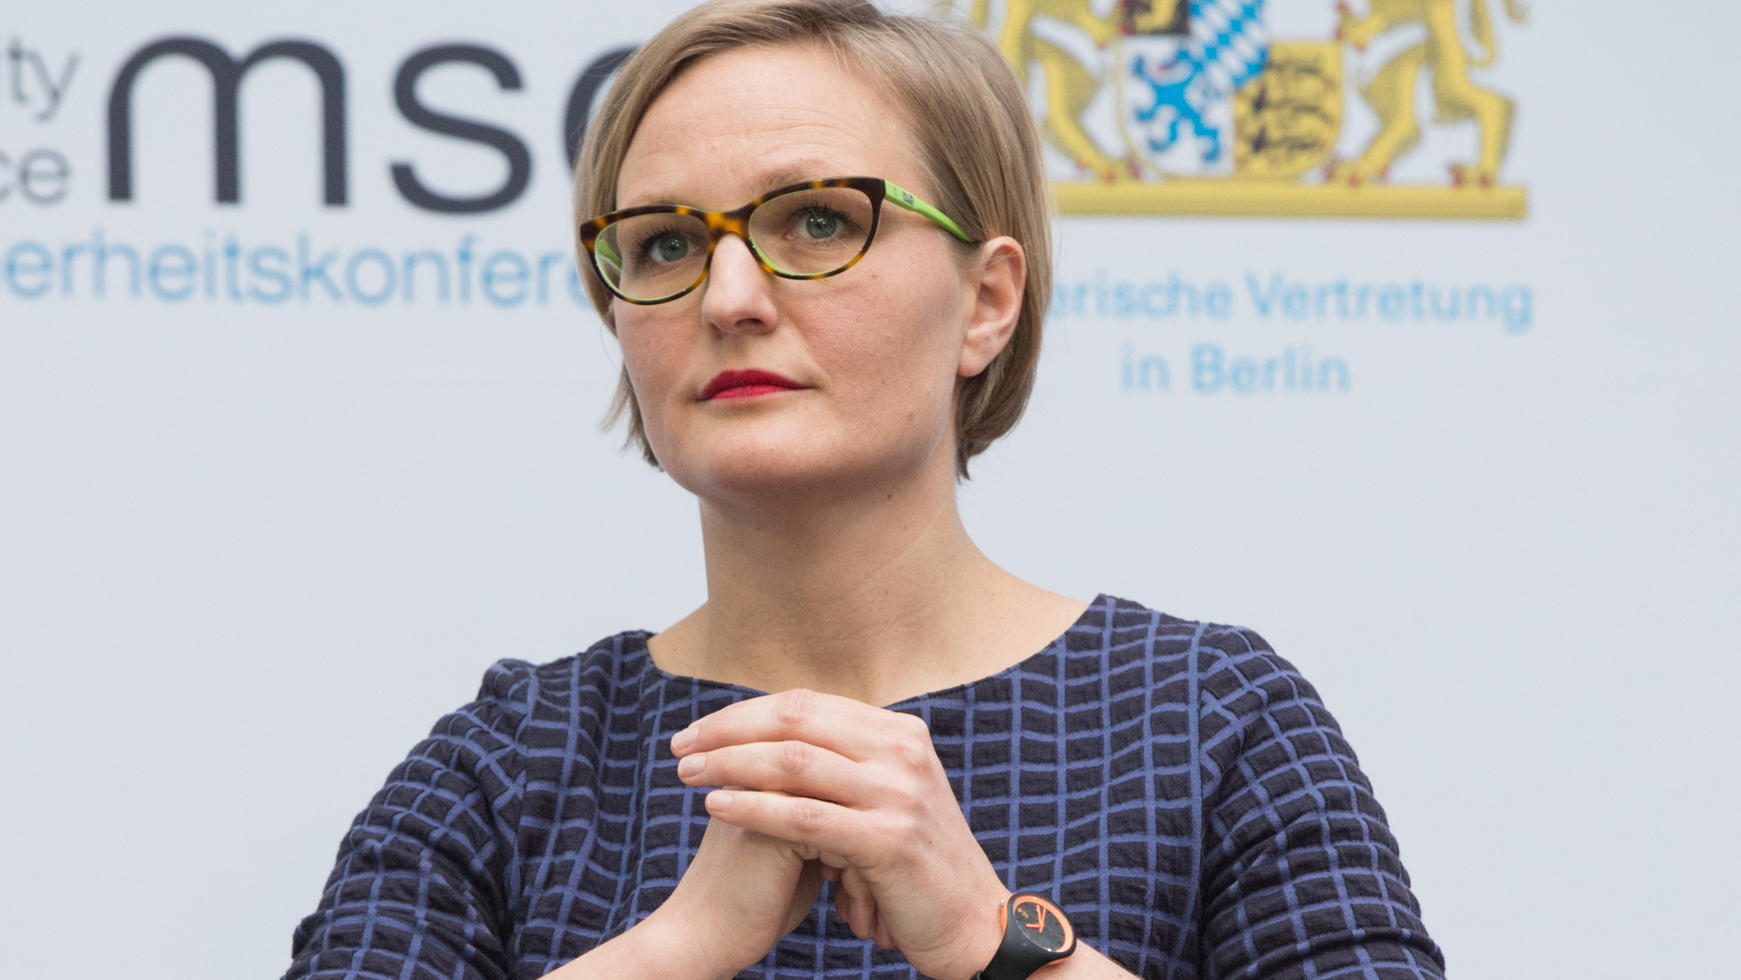 Grünen-Politikerin Franziska Brantner auf einer Podiumsdiskussion in Berlin.